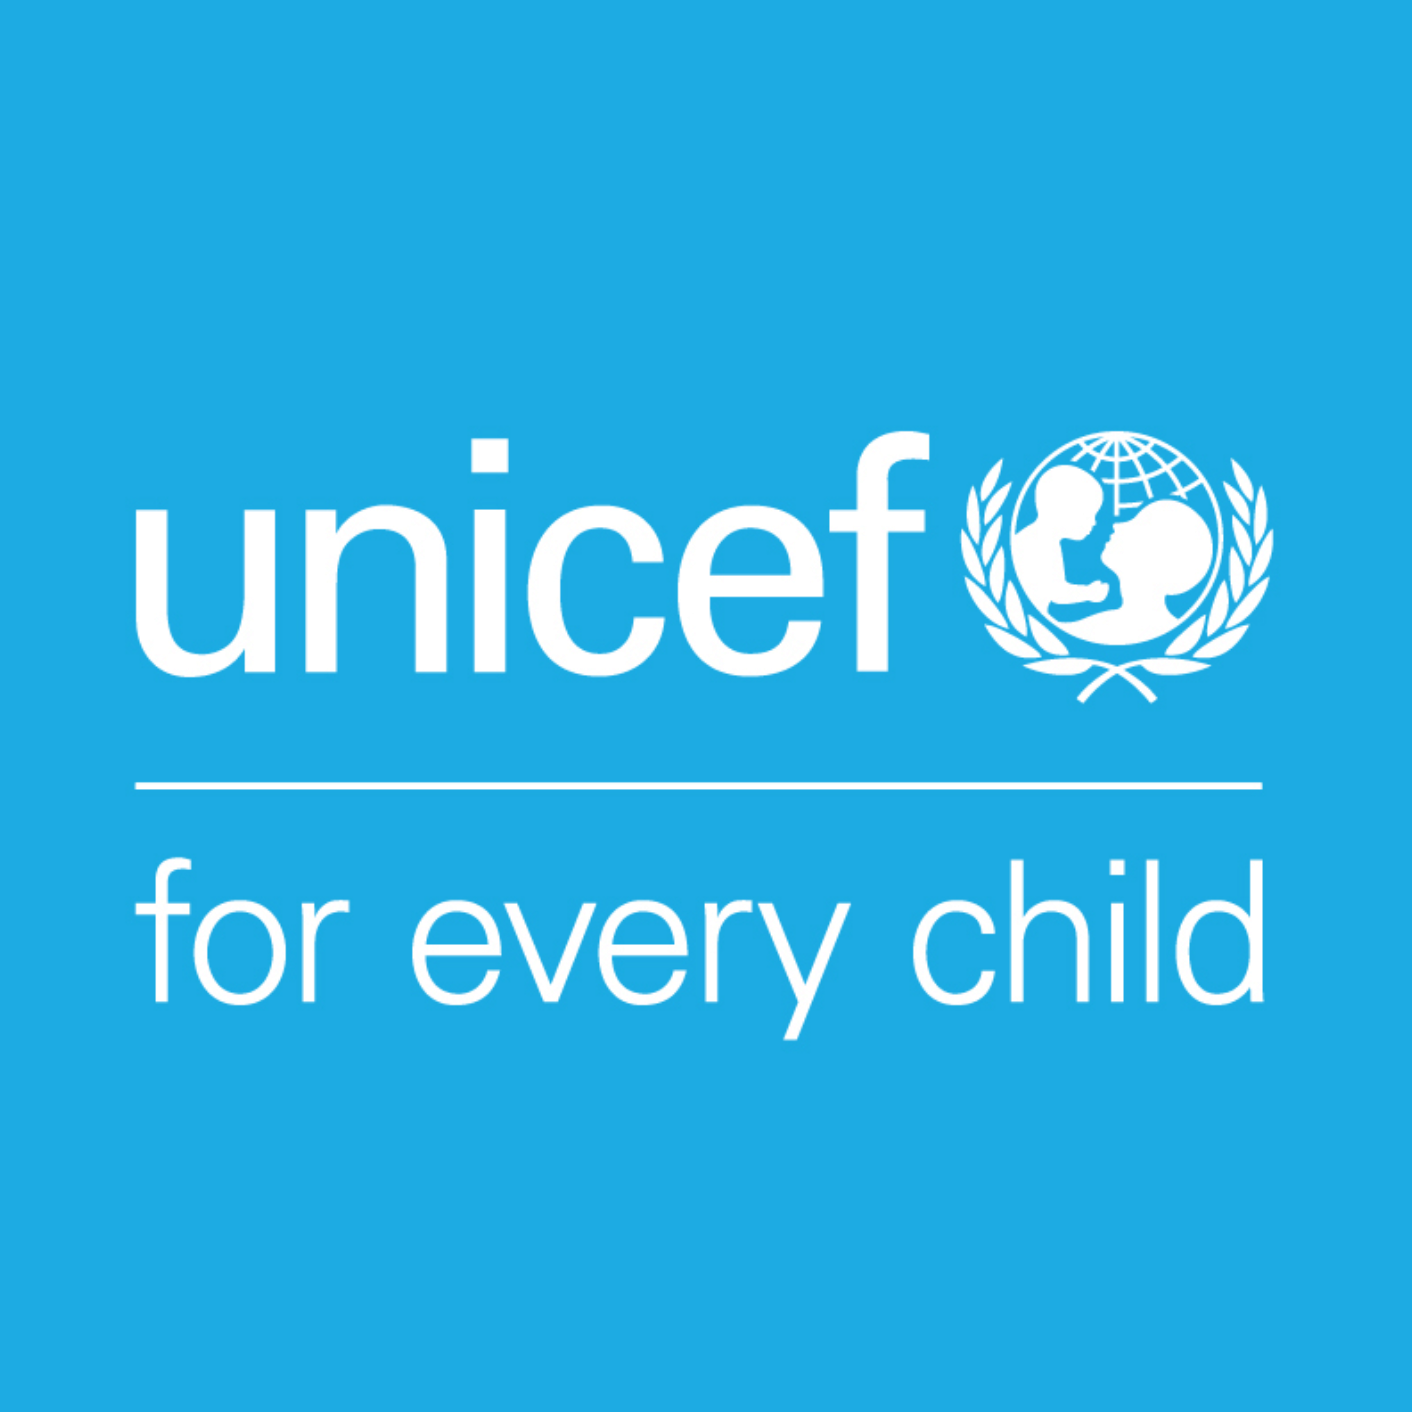  Education Program (UNICEF) 